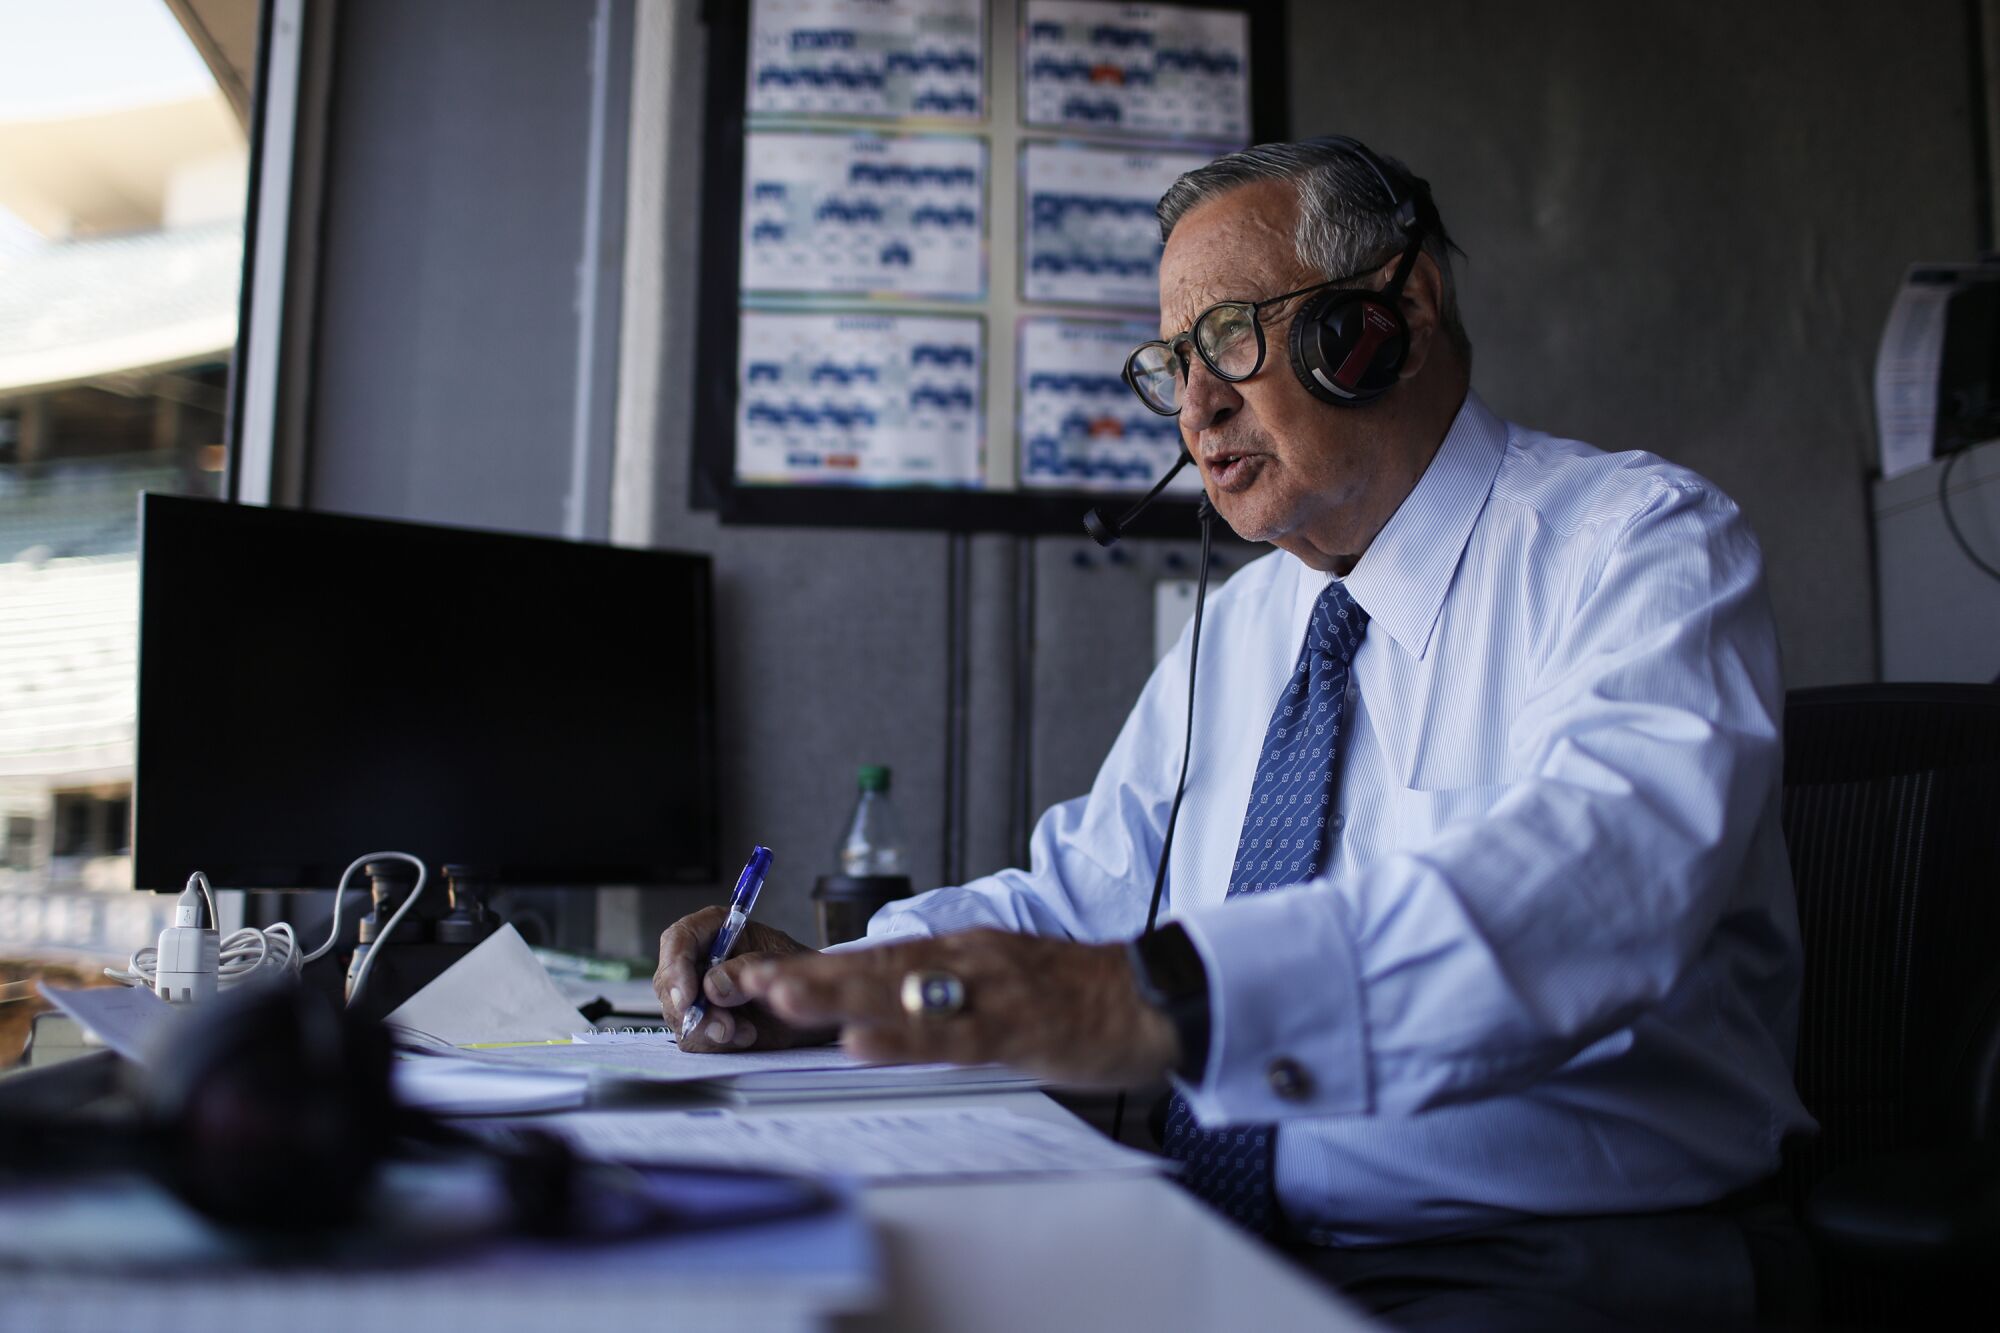 Dodgers broadcaster Jaime Jarrín prepares for a game at Dodger Stadium in July.